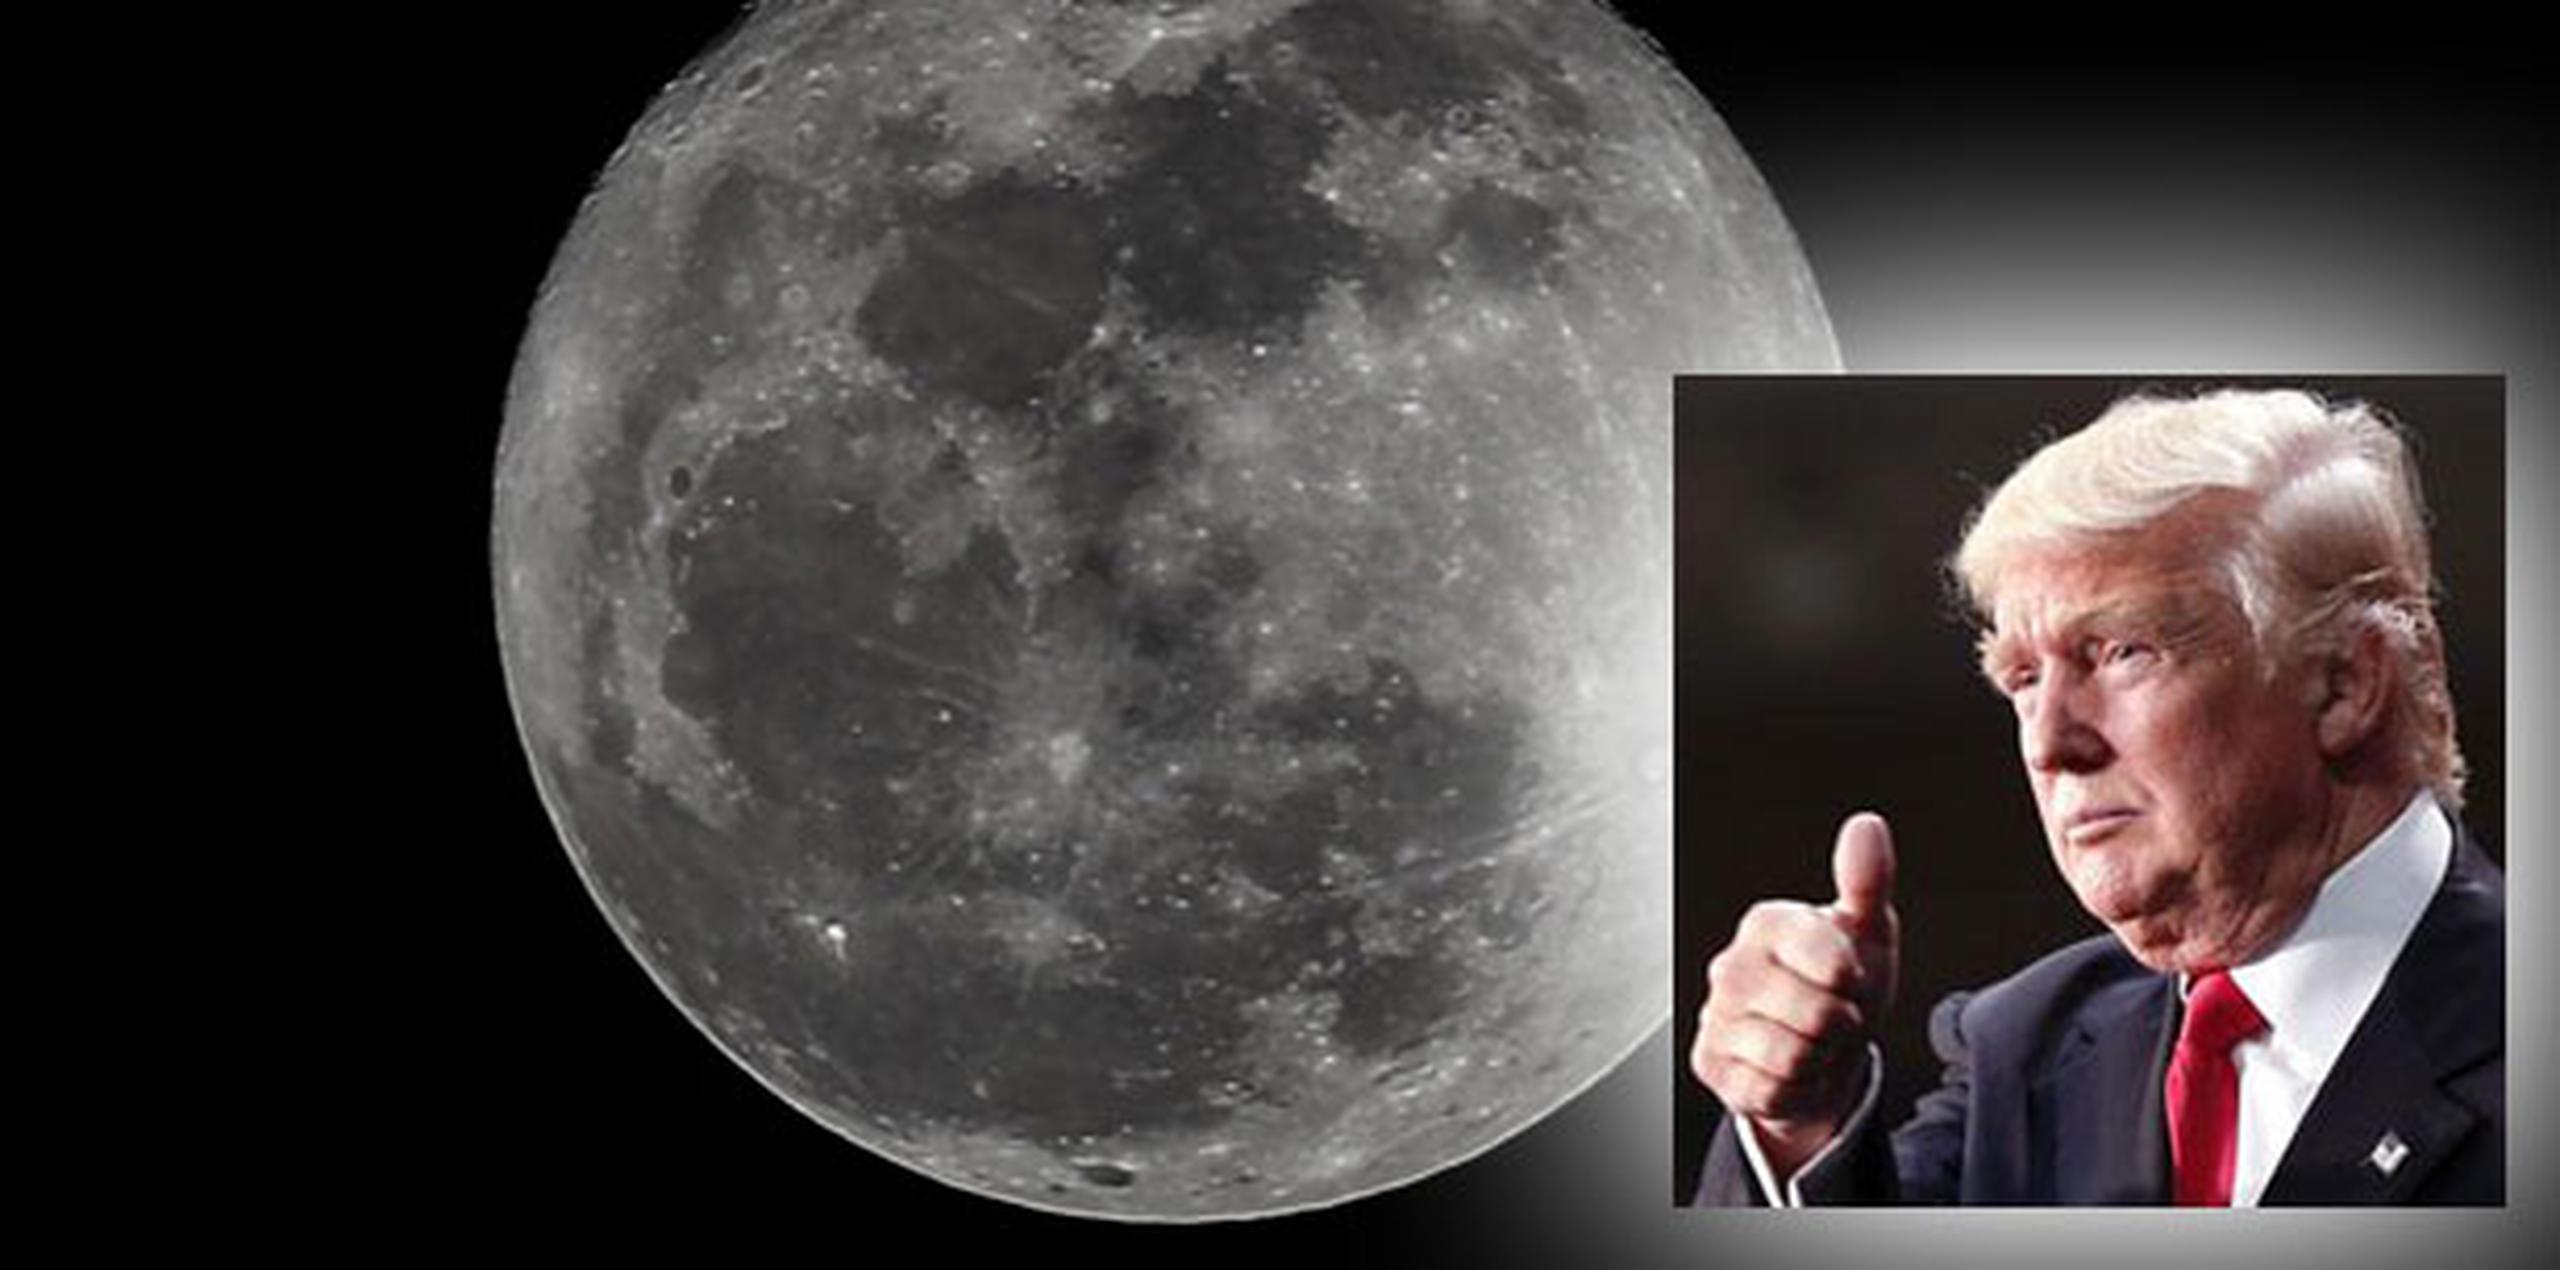 En octubre, el vicepresidente, Mike Pence, adelantó el interés de Washington en "enviar astronautas estadounidenses a la Luna". (Archivo)